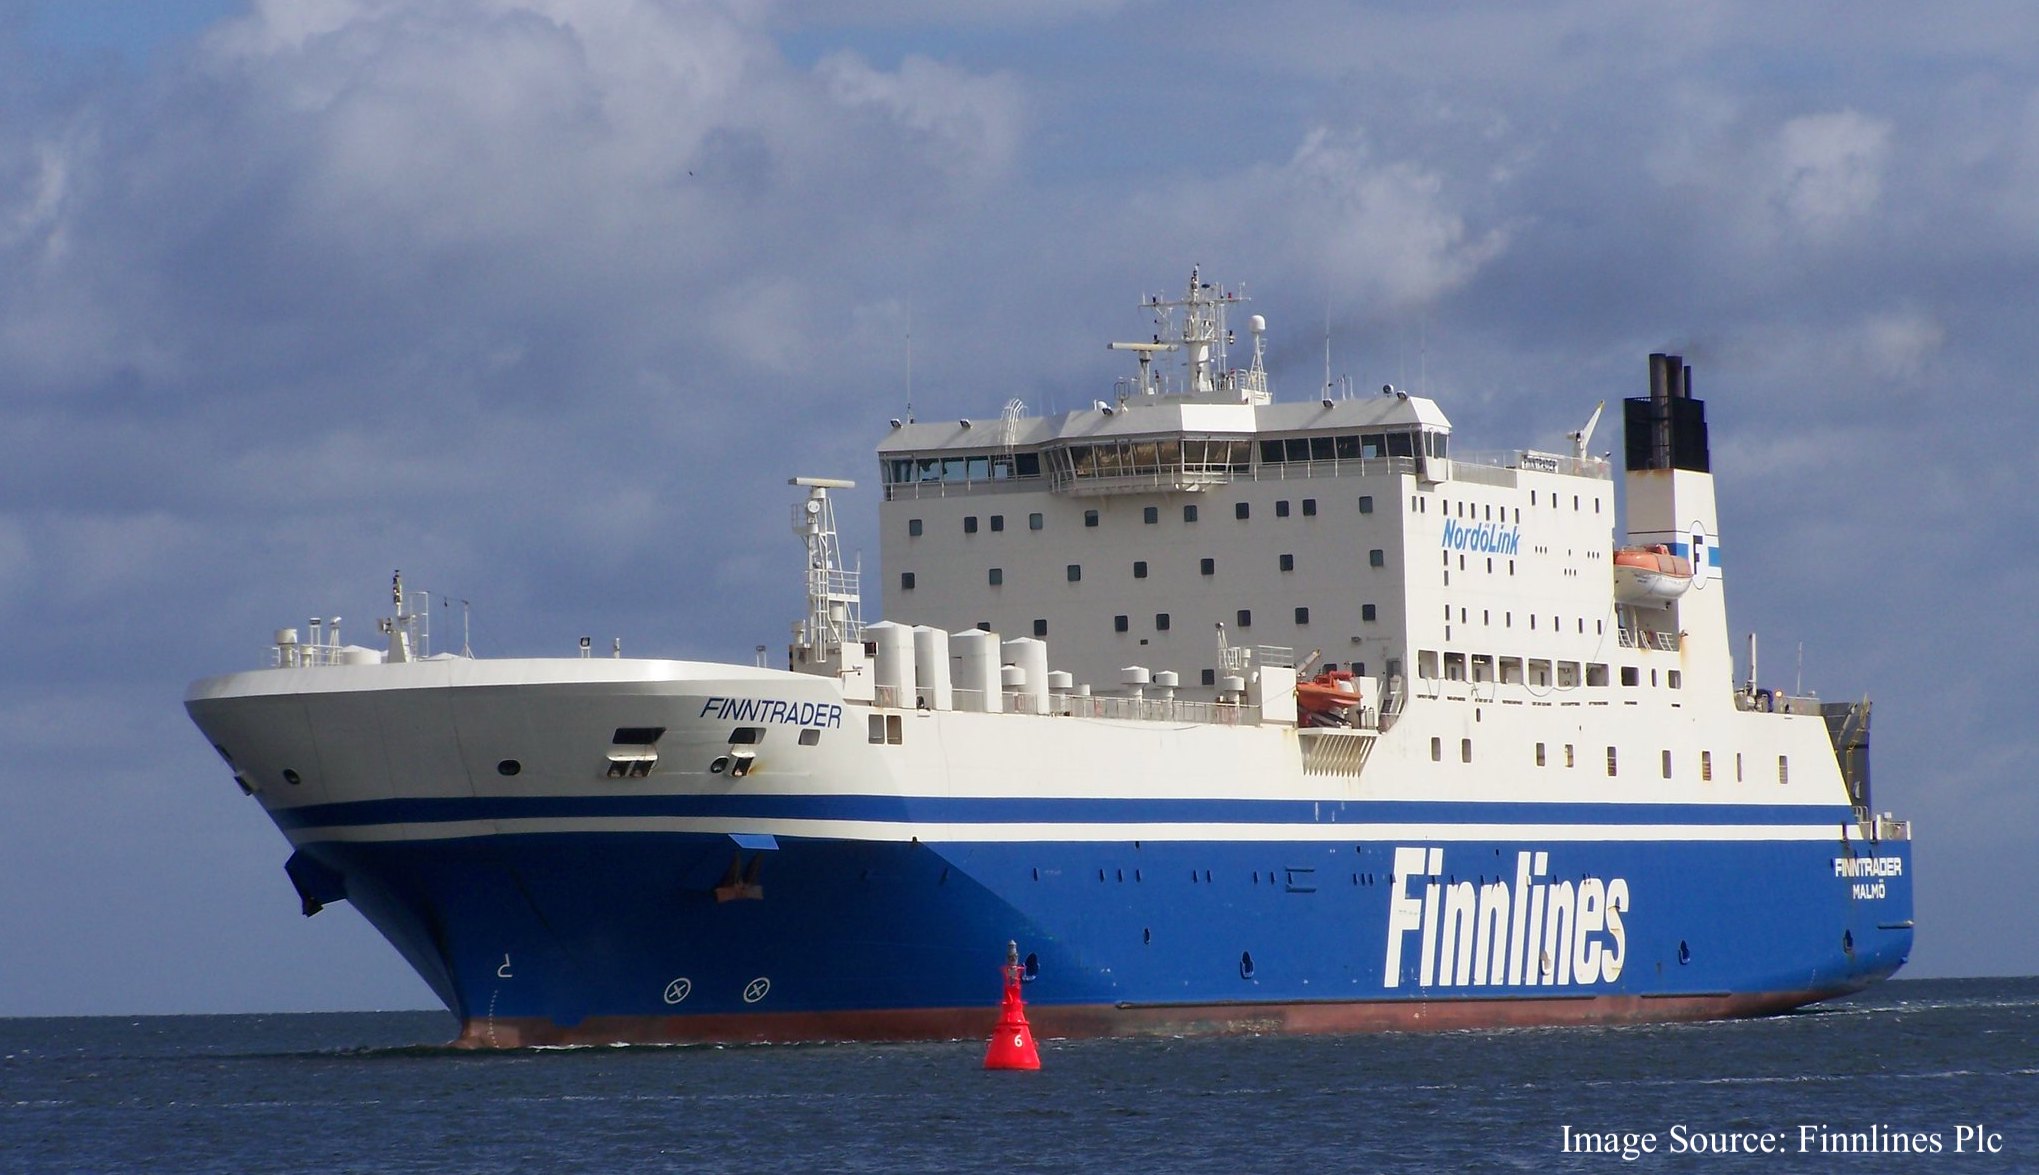 Foto Finnlines - Finntrader laev